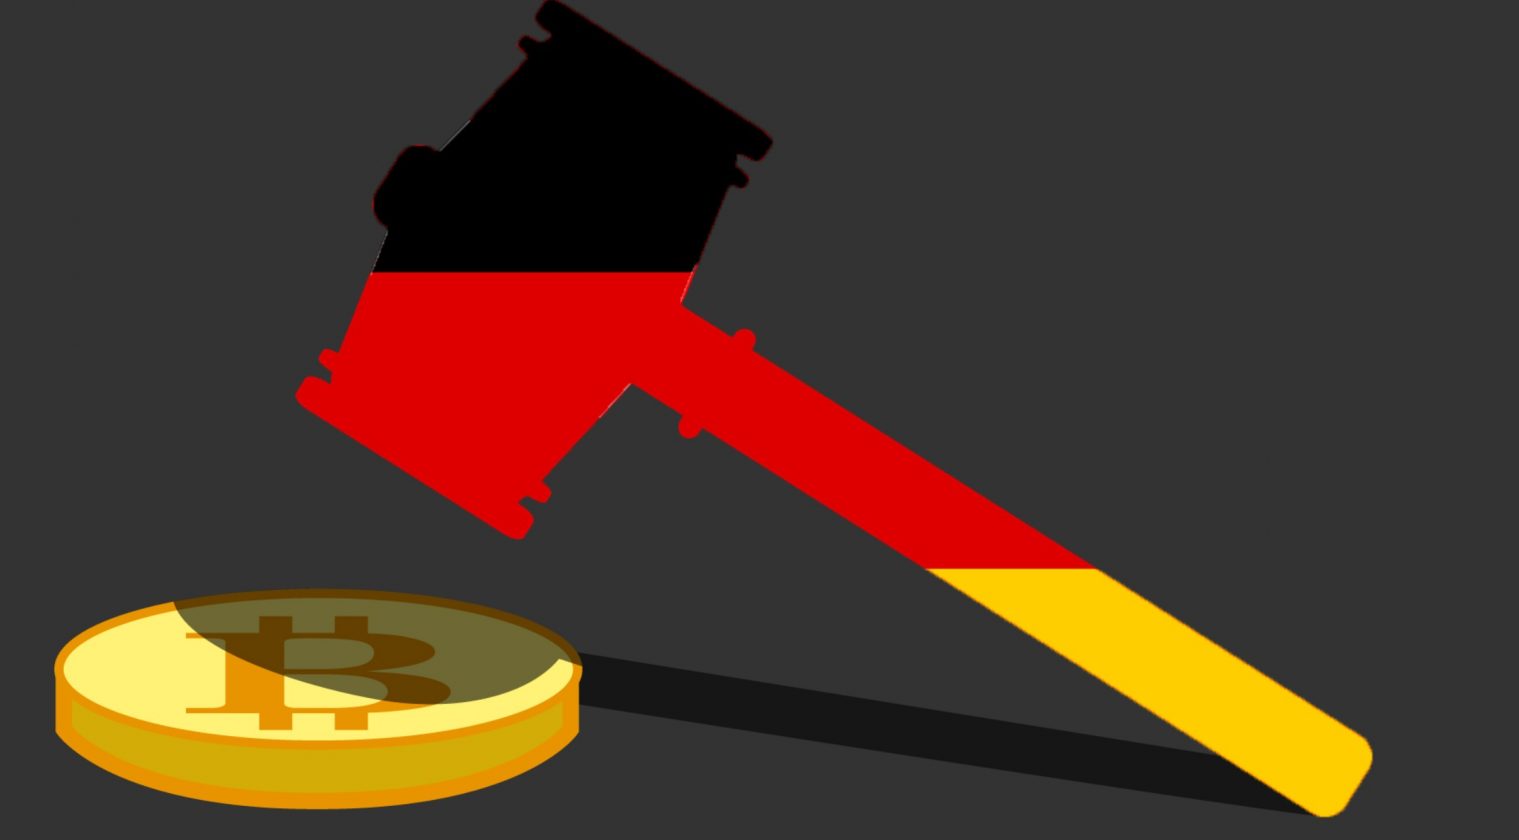 Alman mahkemesi, Bitcoin kararını verdi - Kripto Para Haber